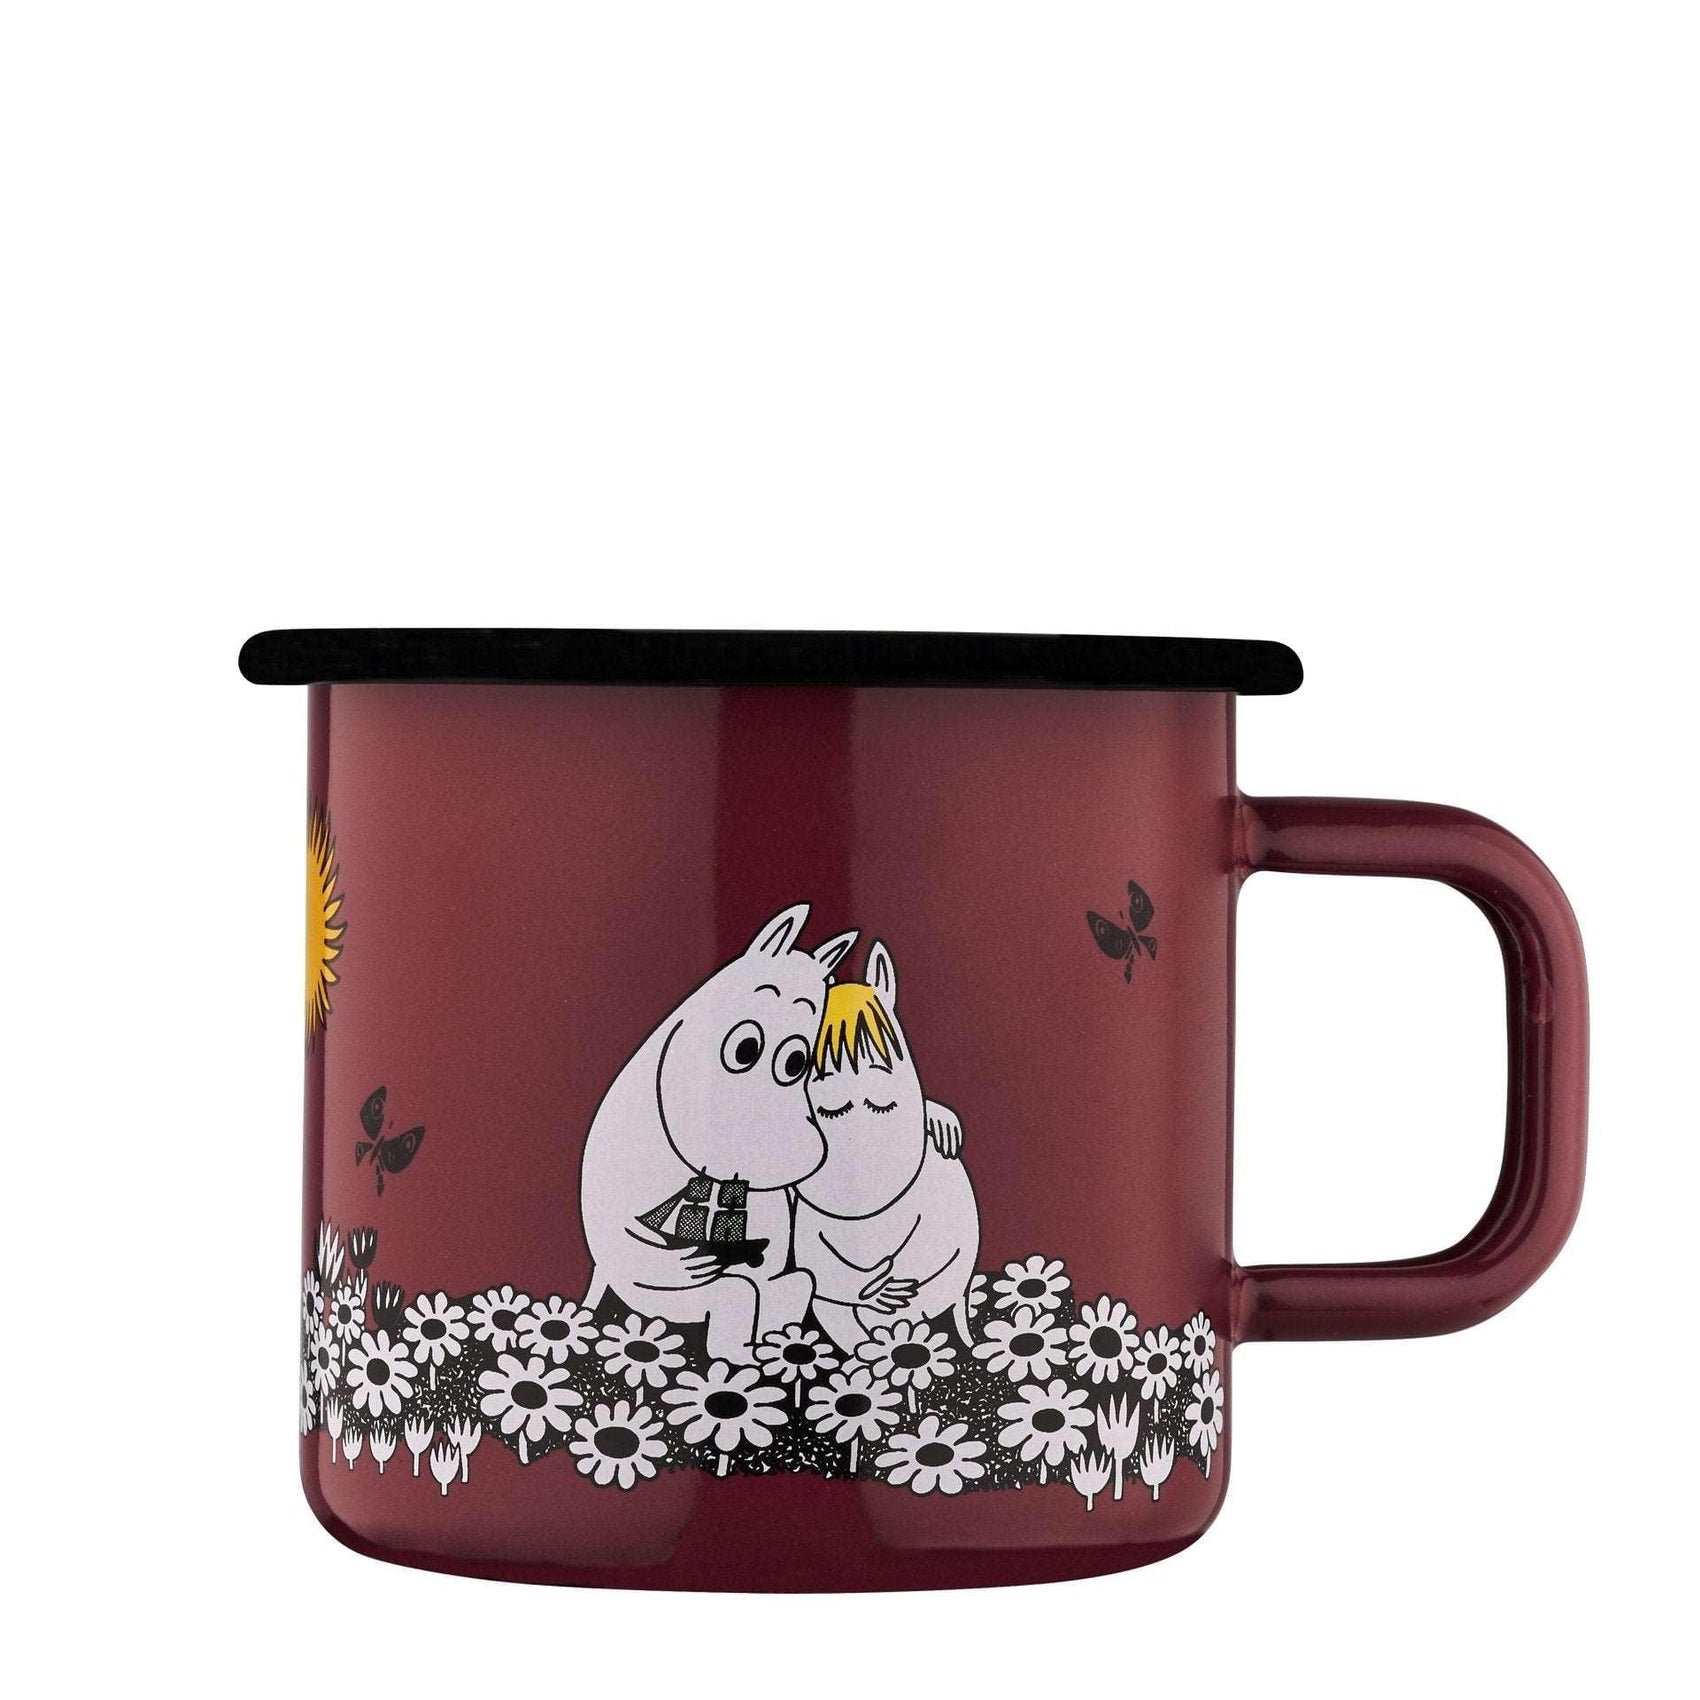 The Moomintrolls enamel mug 3.7dl Together forever